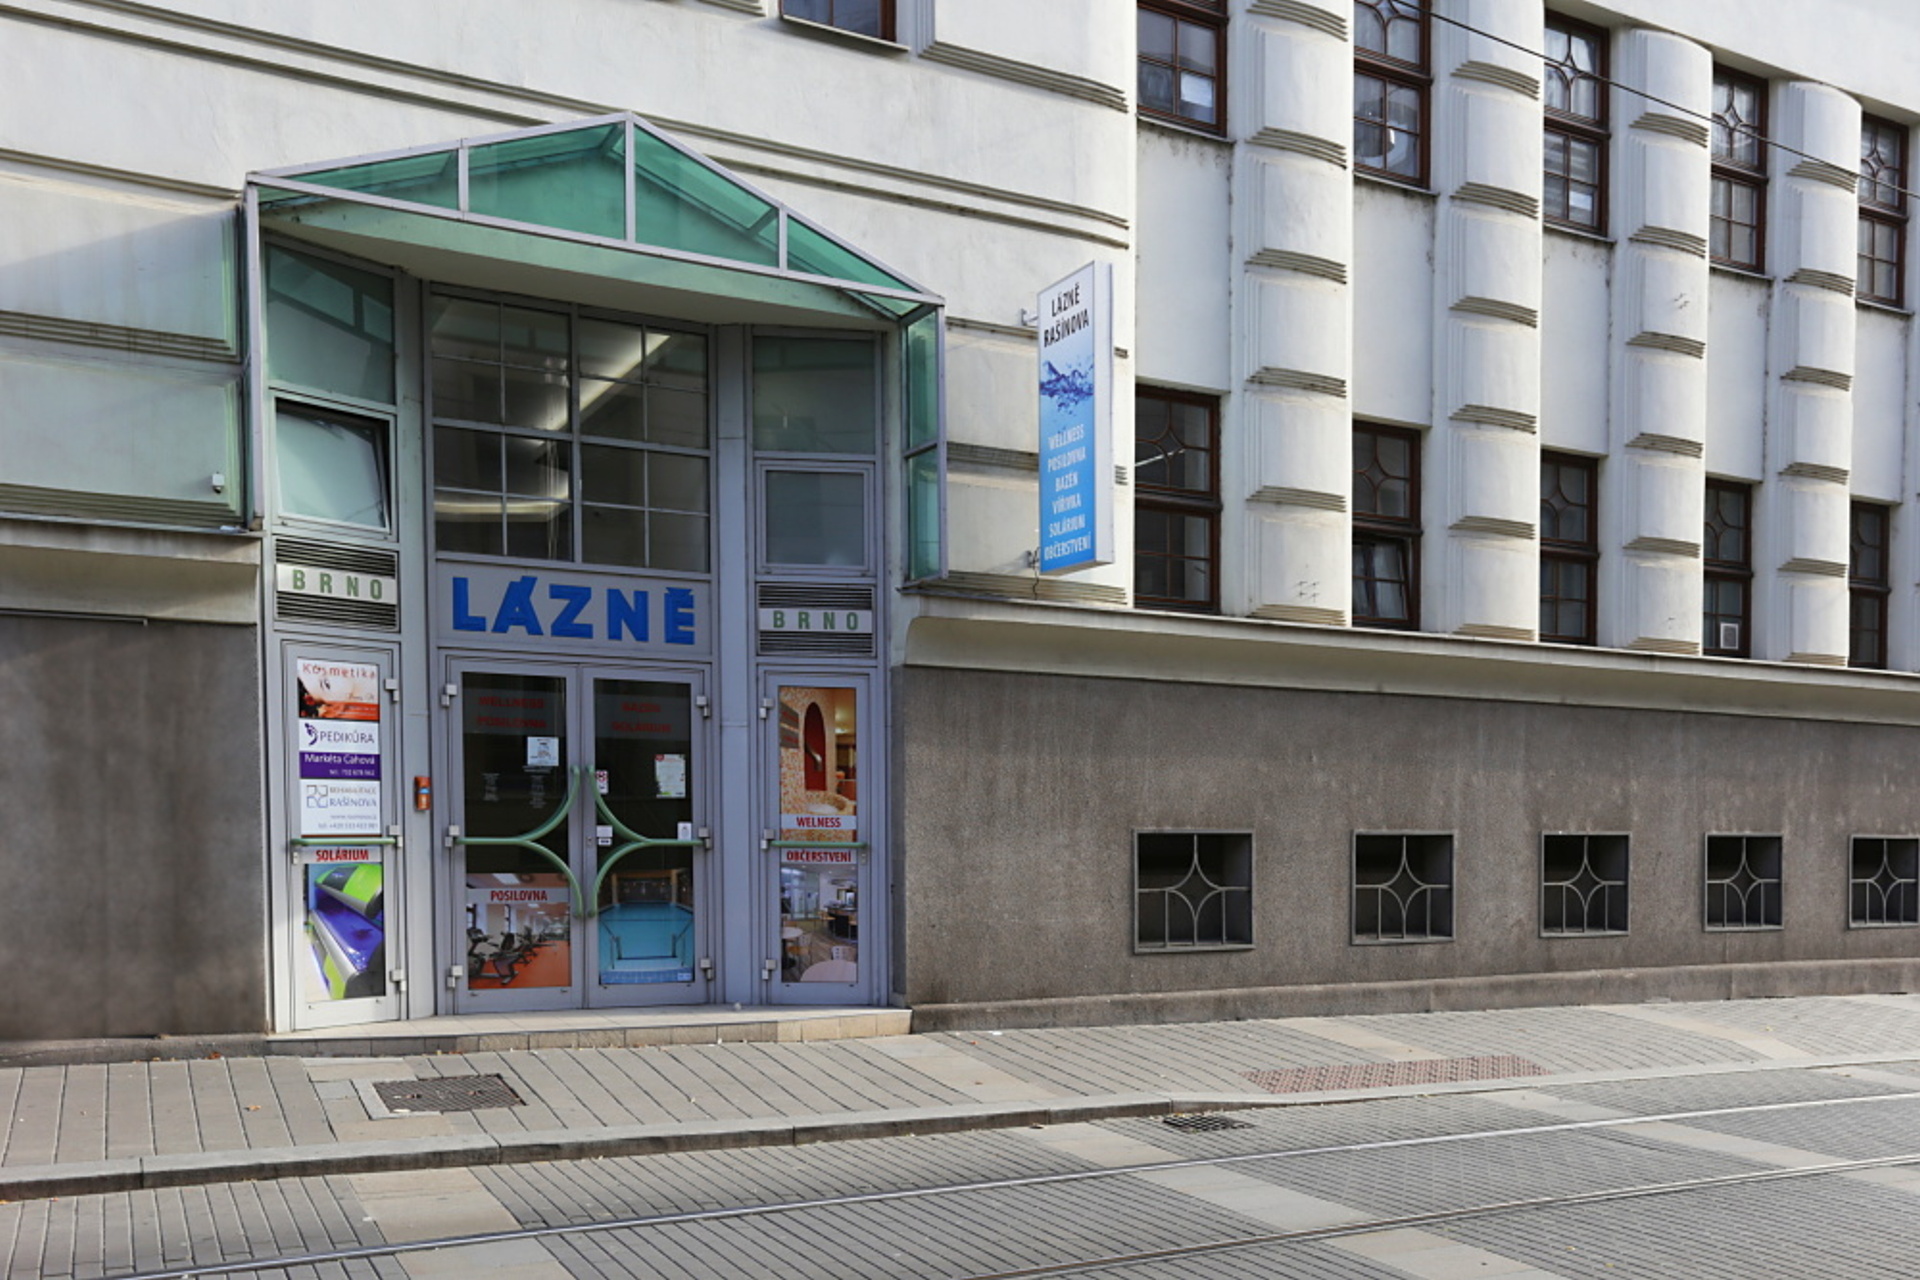 Myfit studio (Brno, Černá Pole) • Firmy.cz